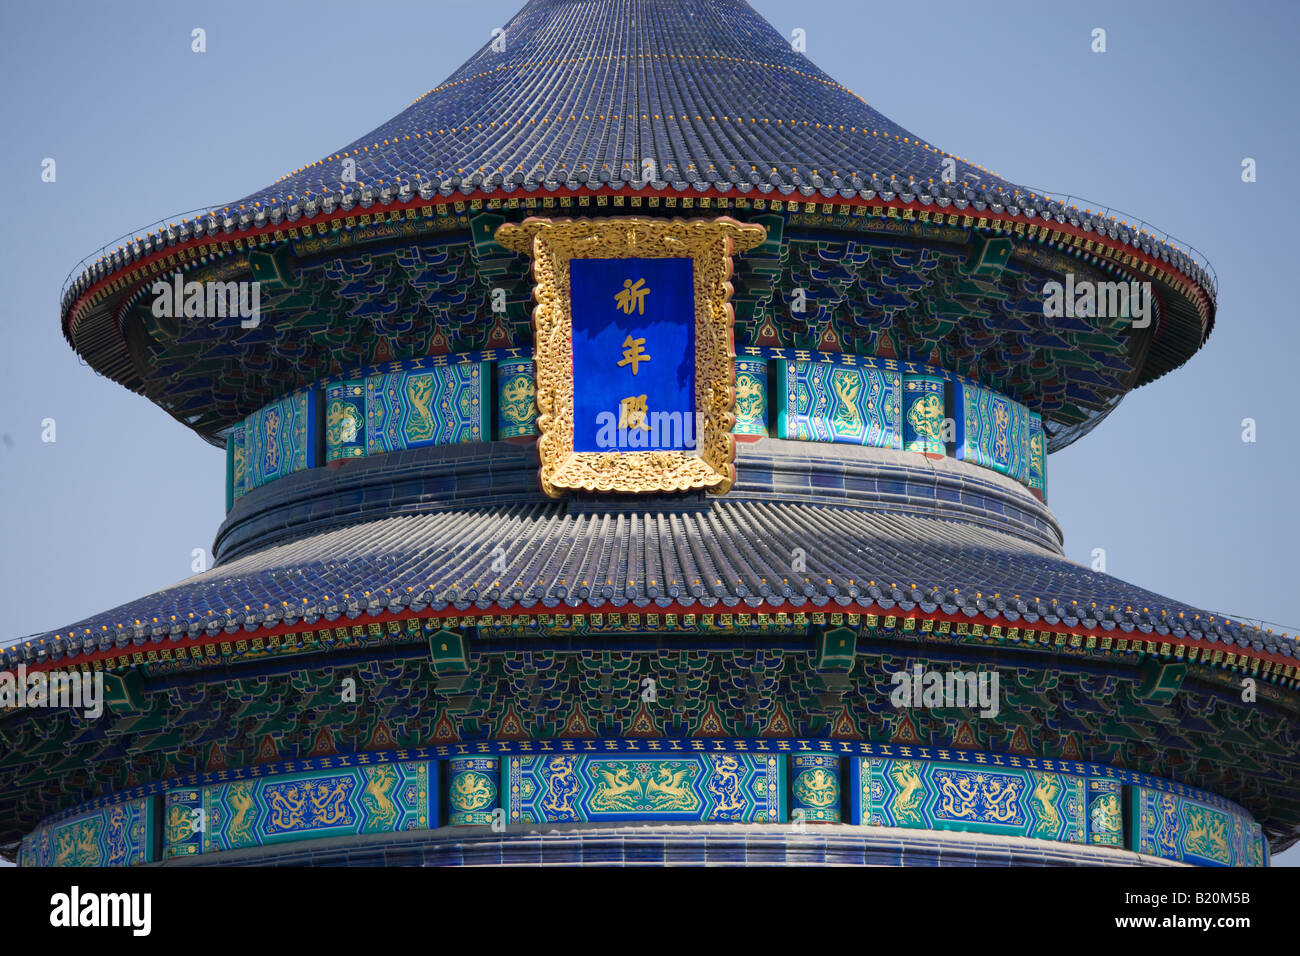 Halle des Gebets für gute Ernte Qinian Dian in der Ming-Dynastie Tempel des Himmels Peking China Stockfoto